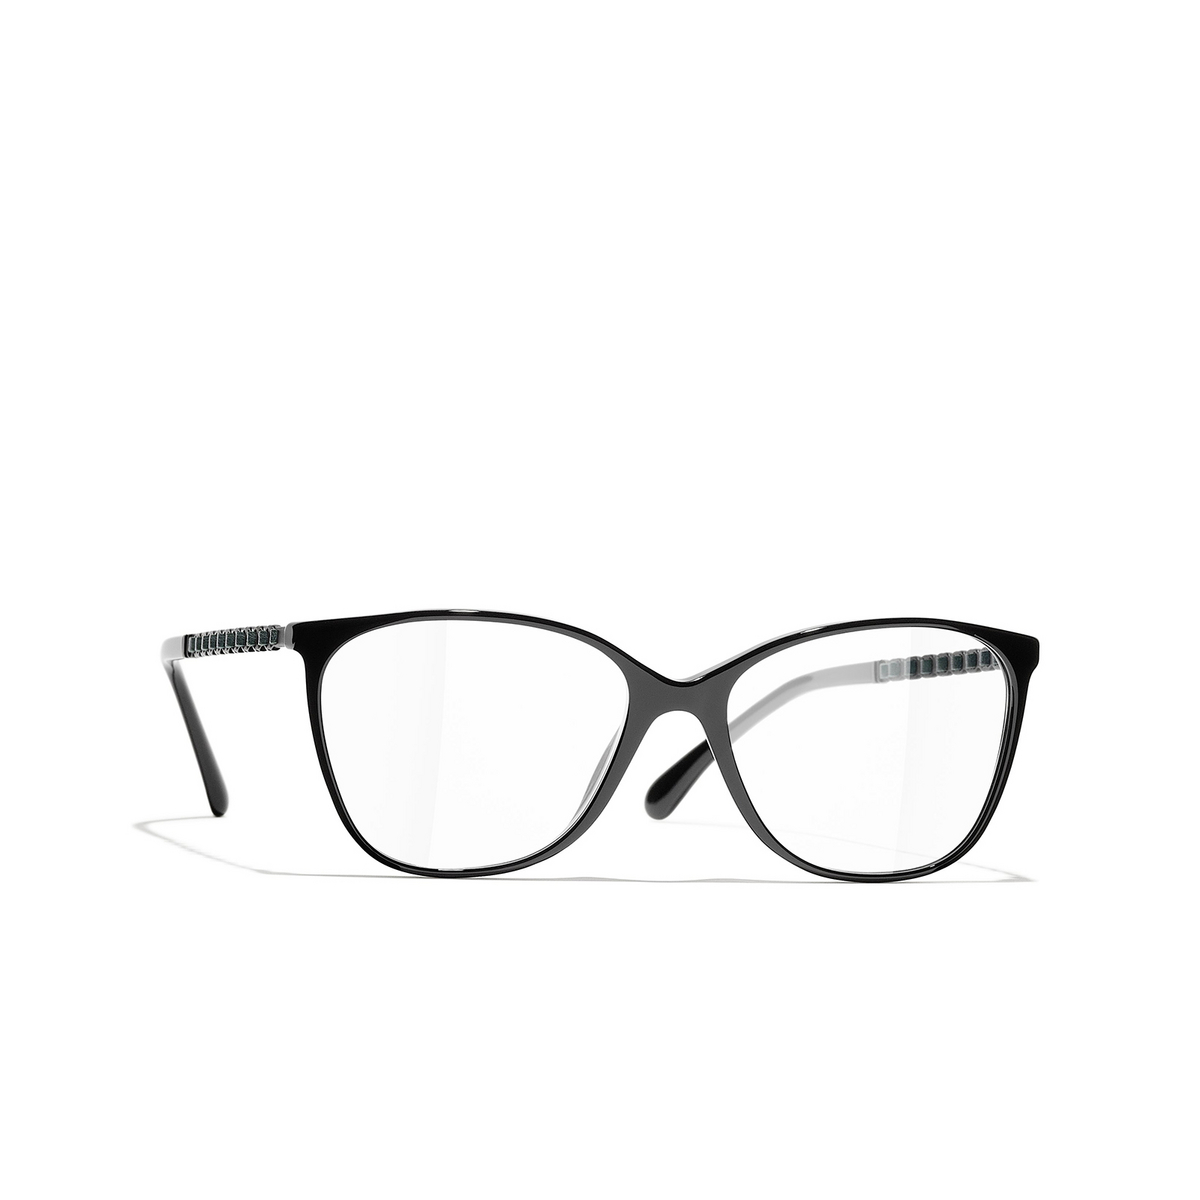 CHANEL square Eyeglasses 1710 Black & Green - three-quarters view